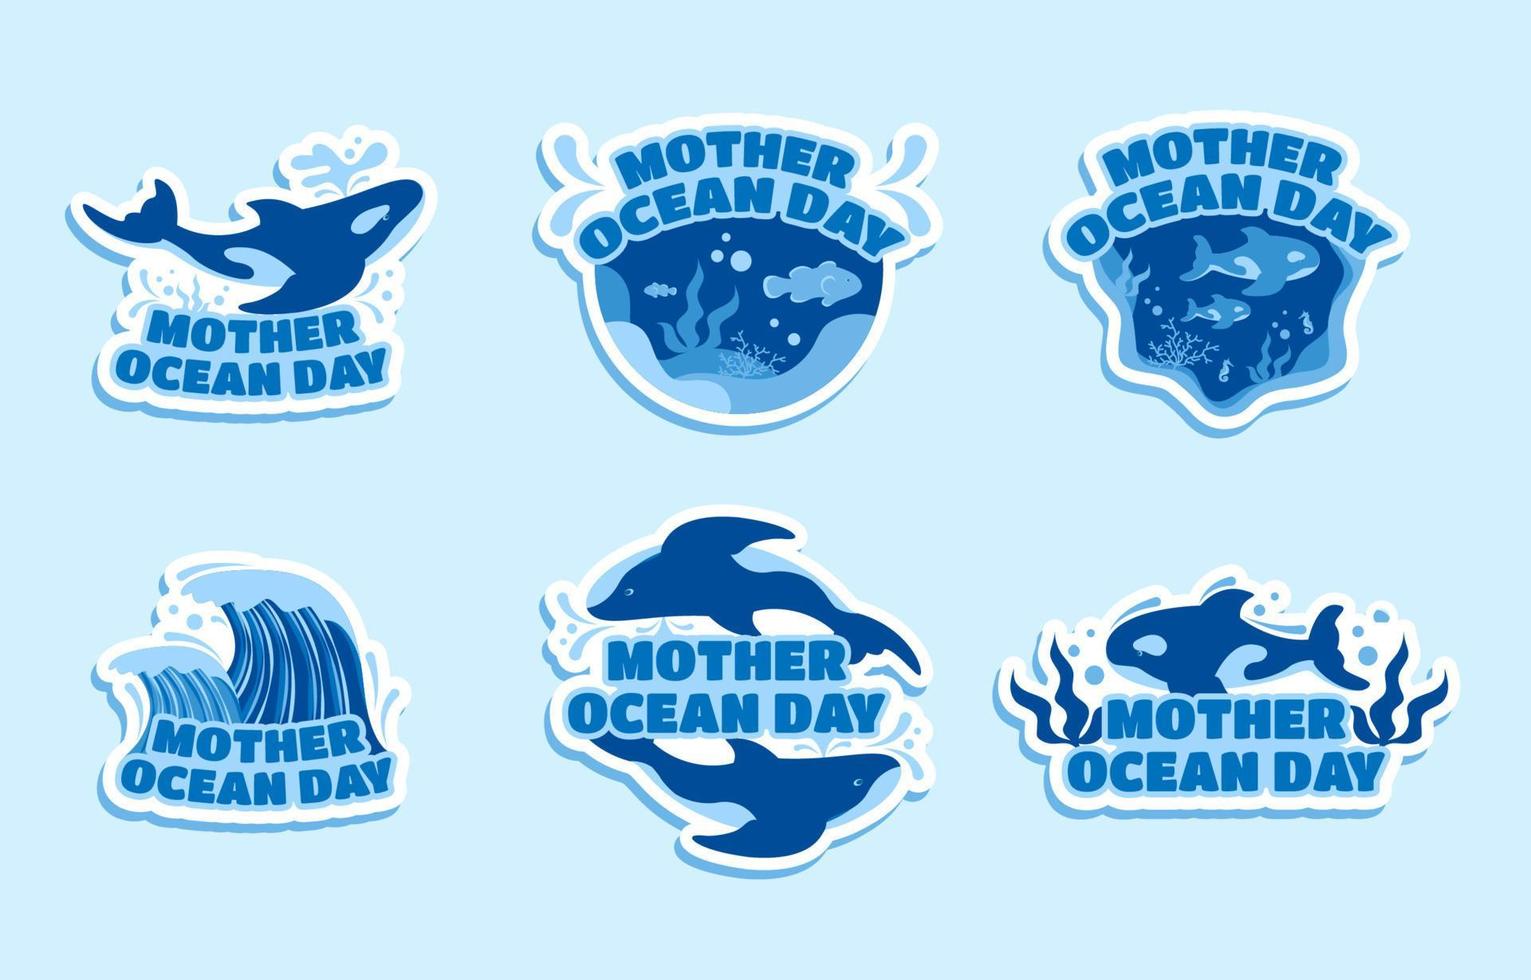 etiqueta engomada del día de la madre océano vector